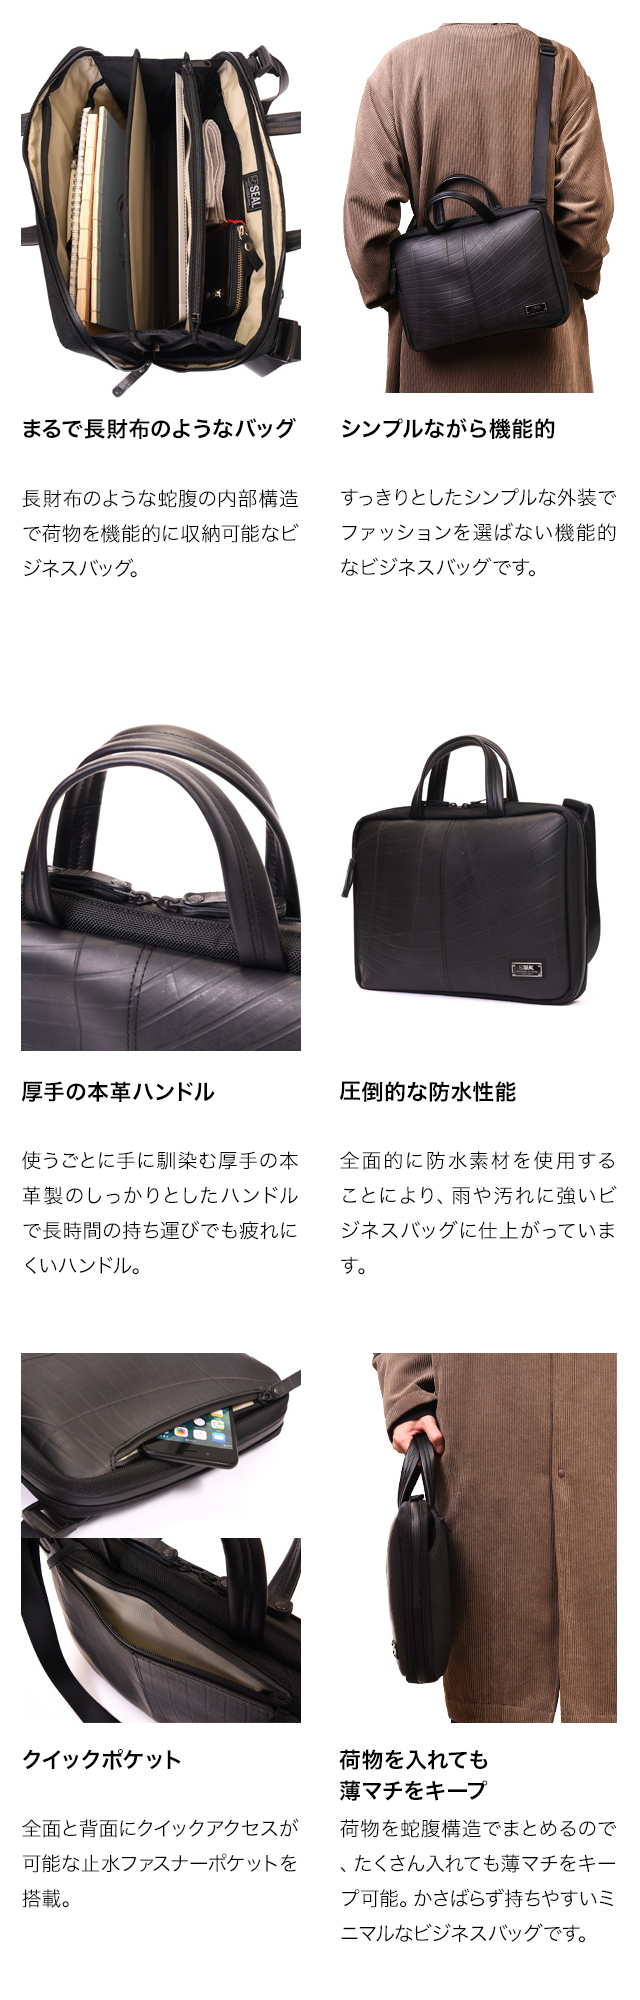 オーガナイザービジネスバッグ | 日本職人が作るメンズ トート バッグ 